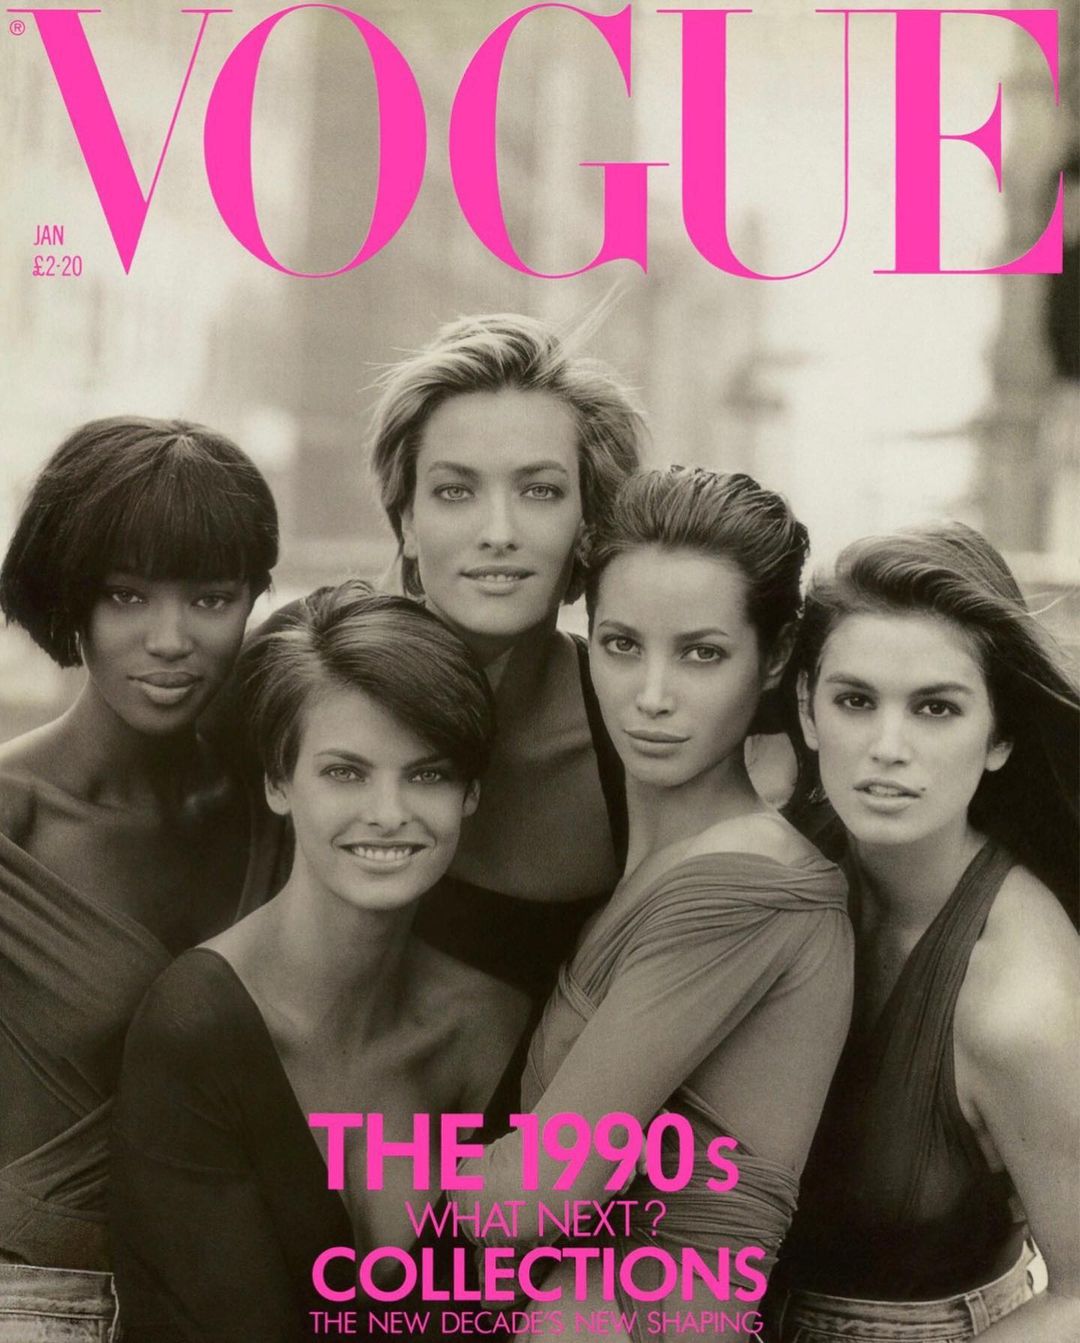 A propósito de la portada de Vogue, están han sido las editoriales más importantes de cada supermodelos